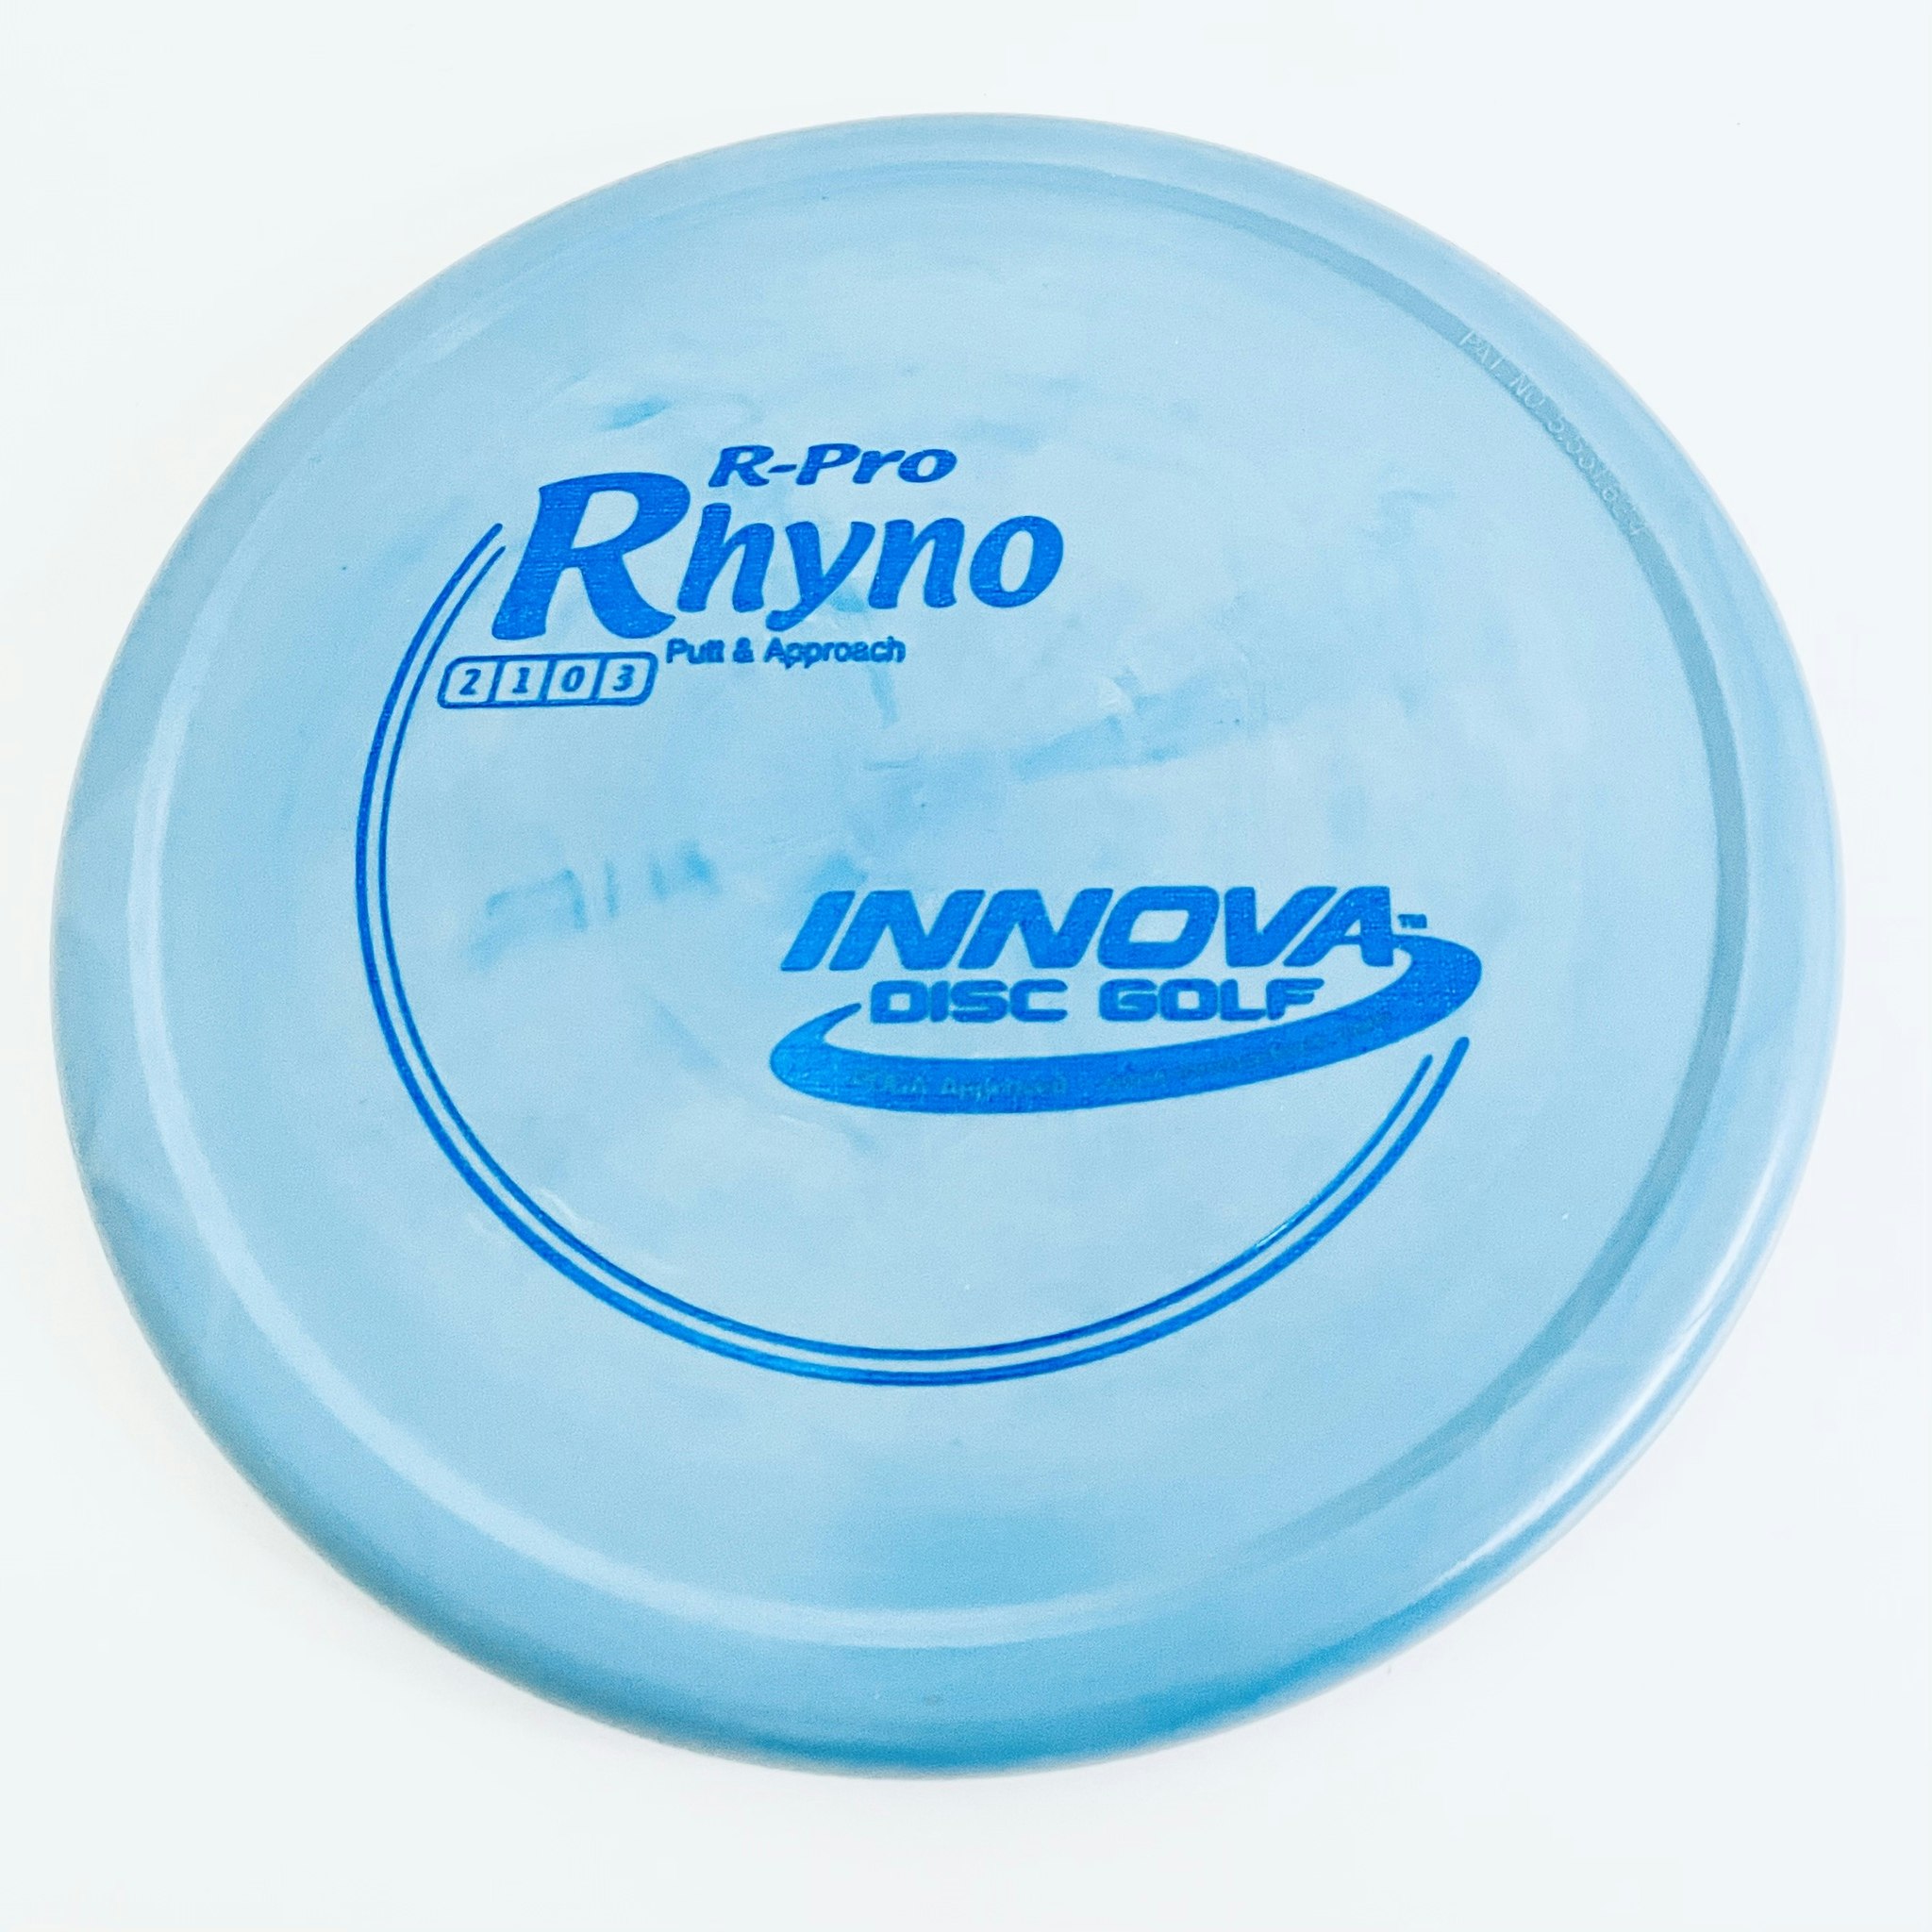 Innova R-Pro Rhyno 2 / 1 / 0 / 3